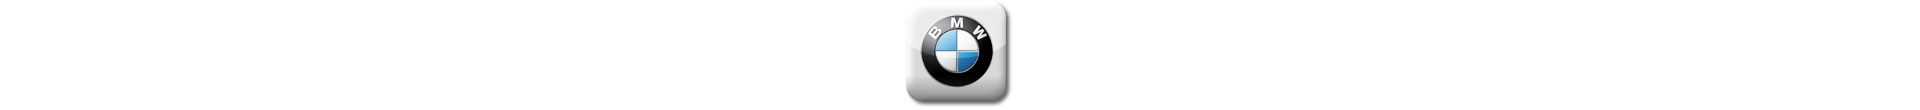 Boitier additionnel BMW Diesel Evolussem